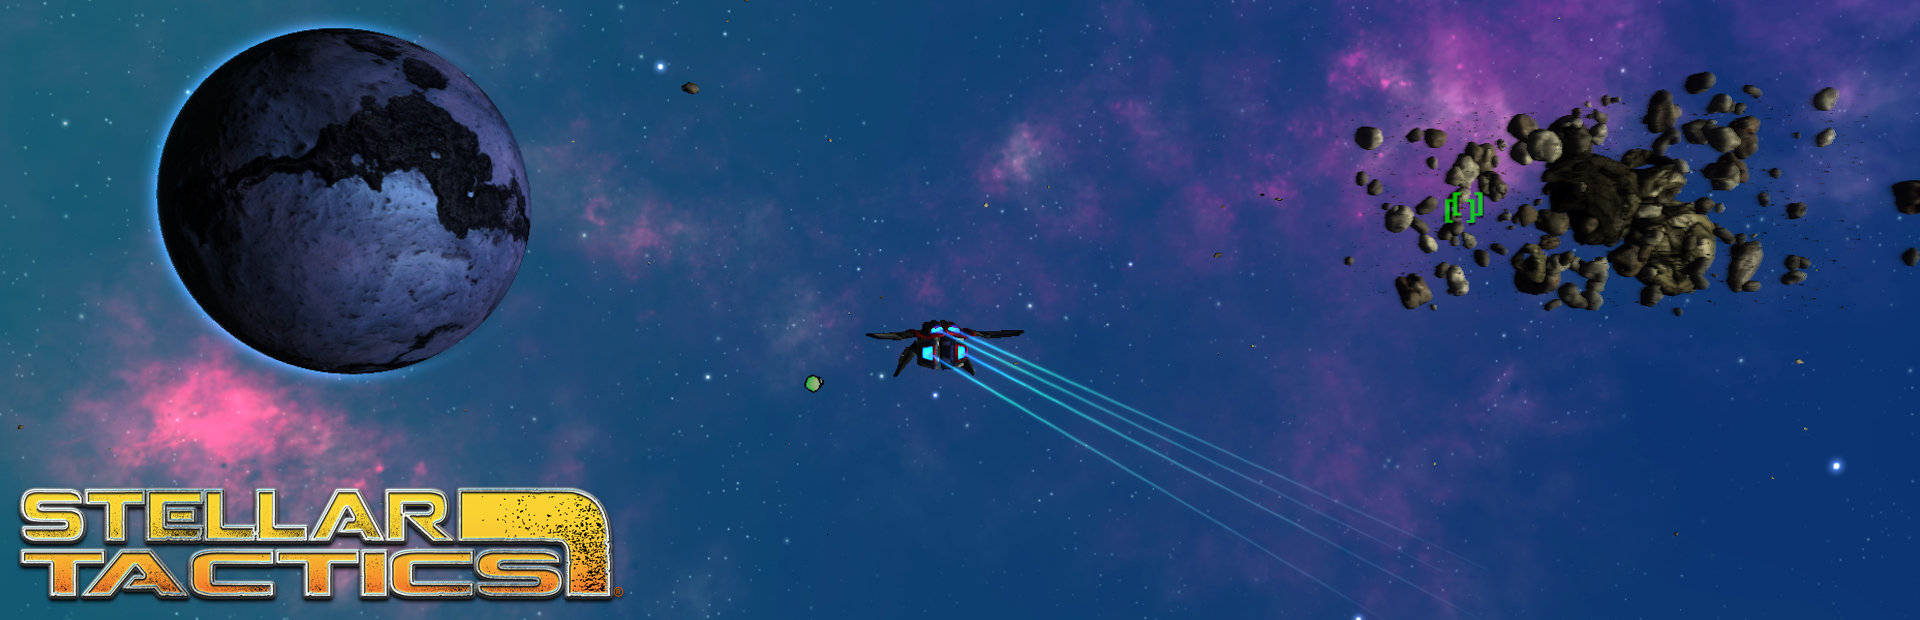 دانلود بازی Stellar Tactics برای PC | گیمباتو